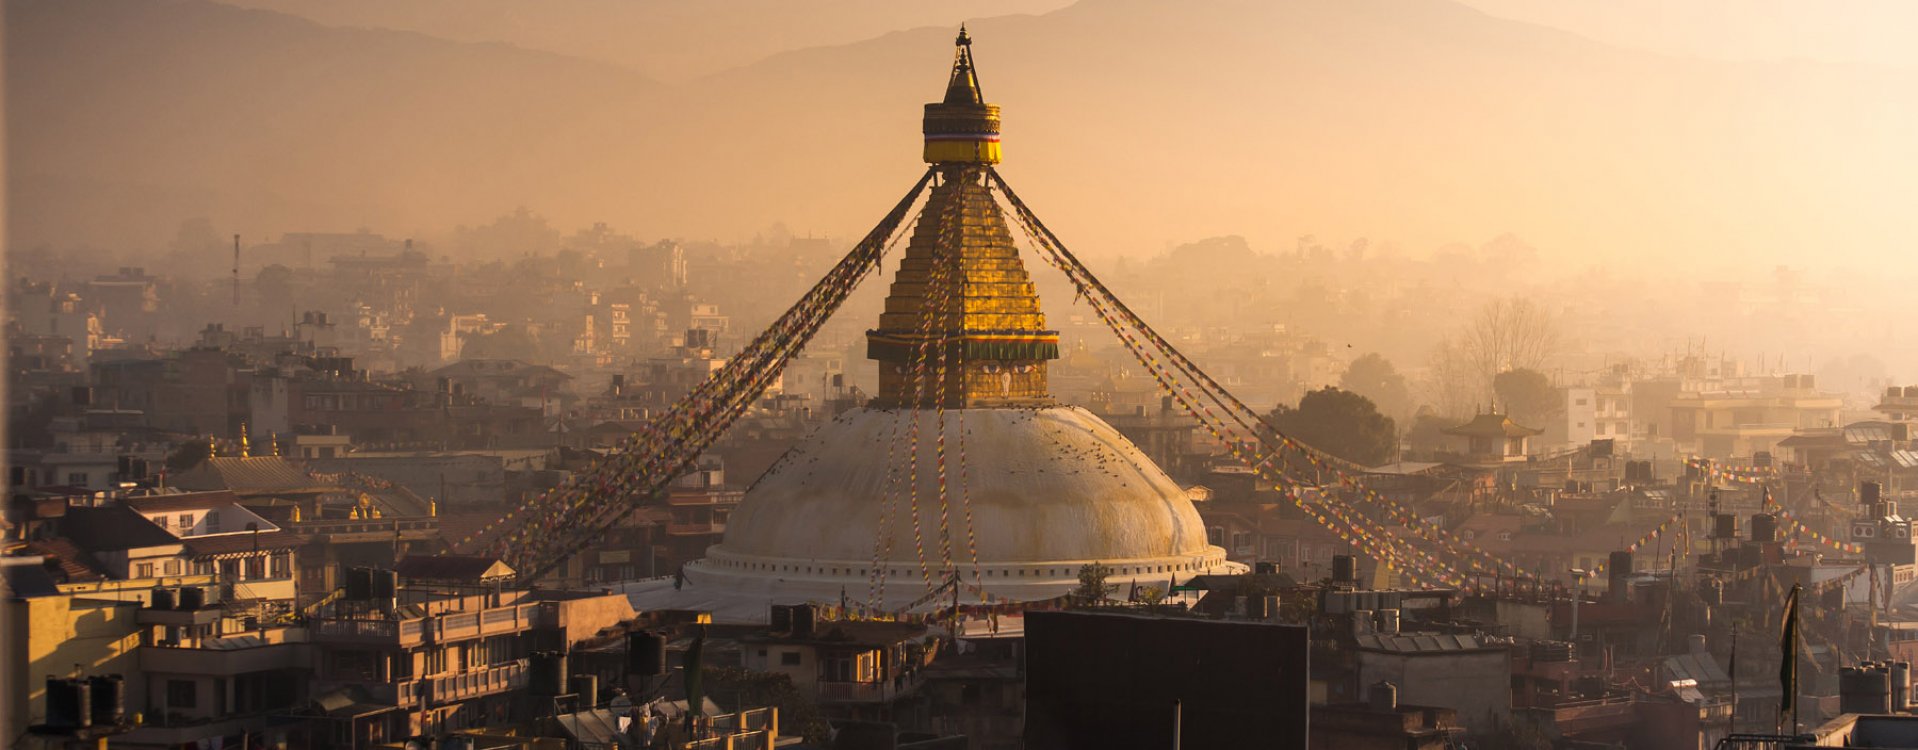 Kathmandu, Bodnath tempel